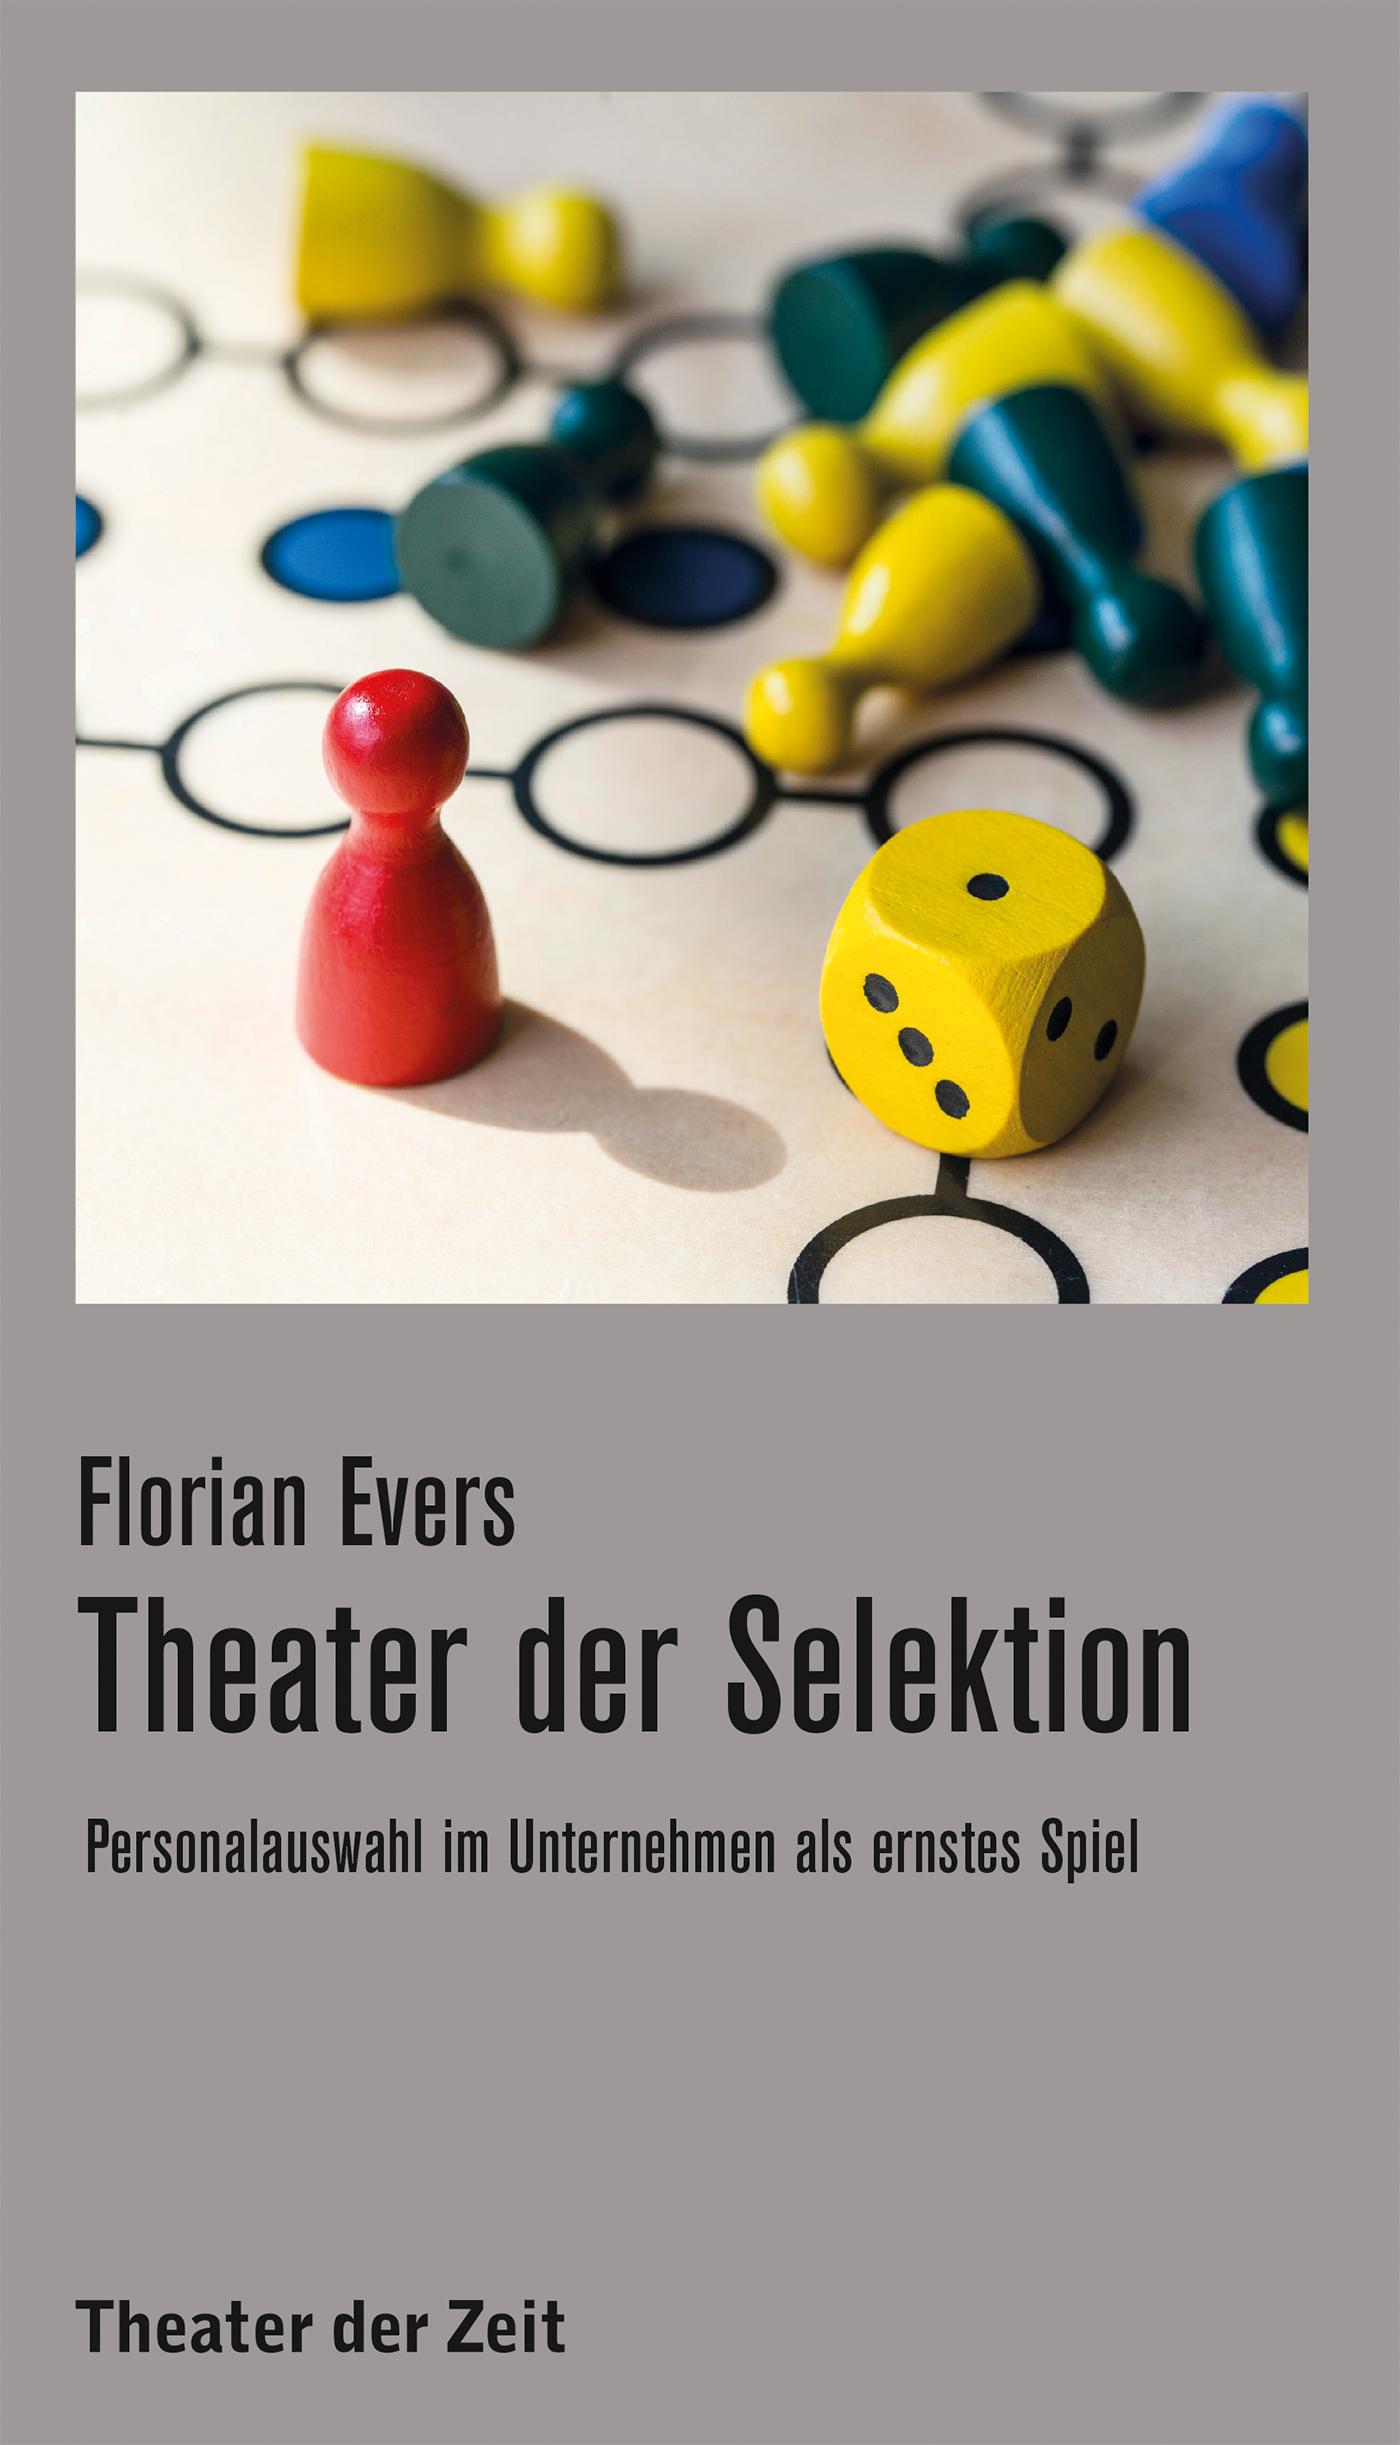 Recherchen 139 "Theater der Selektion"